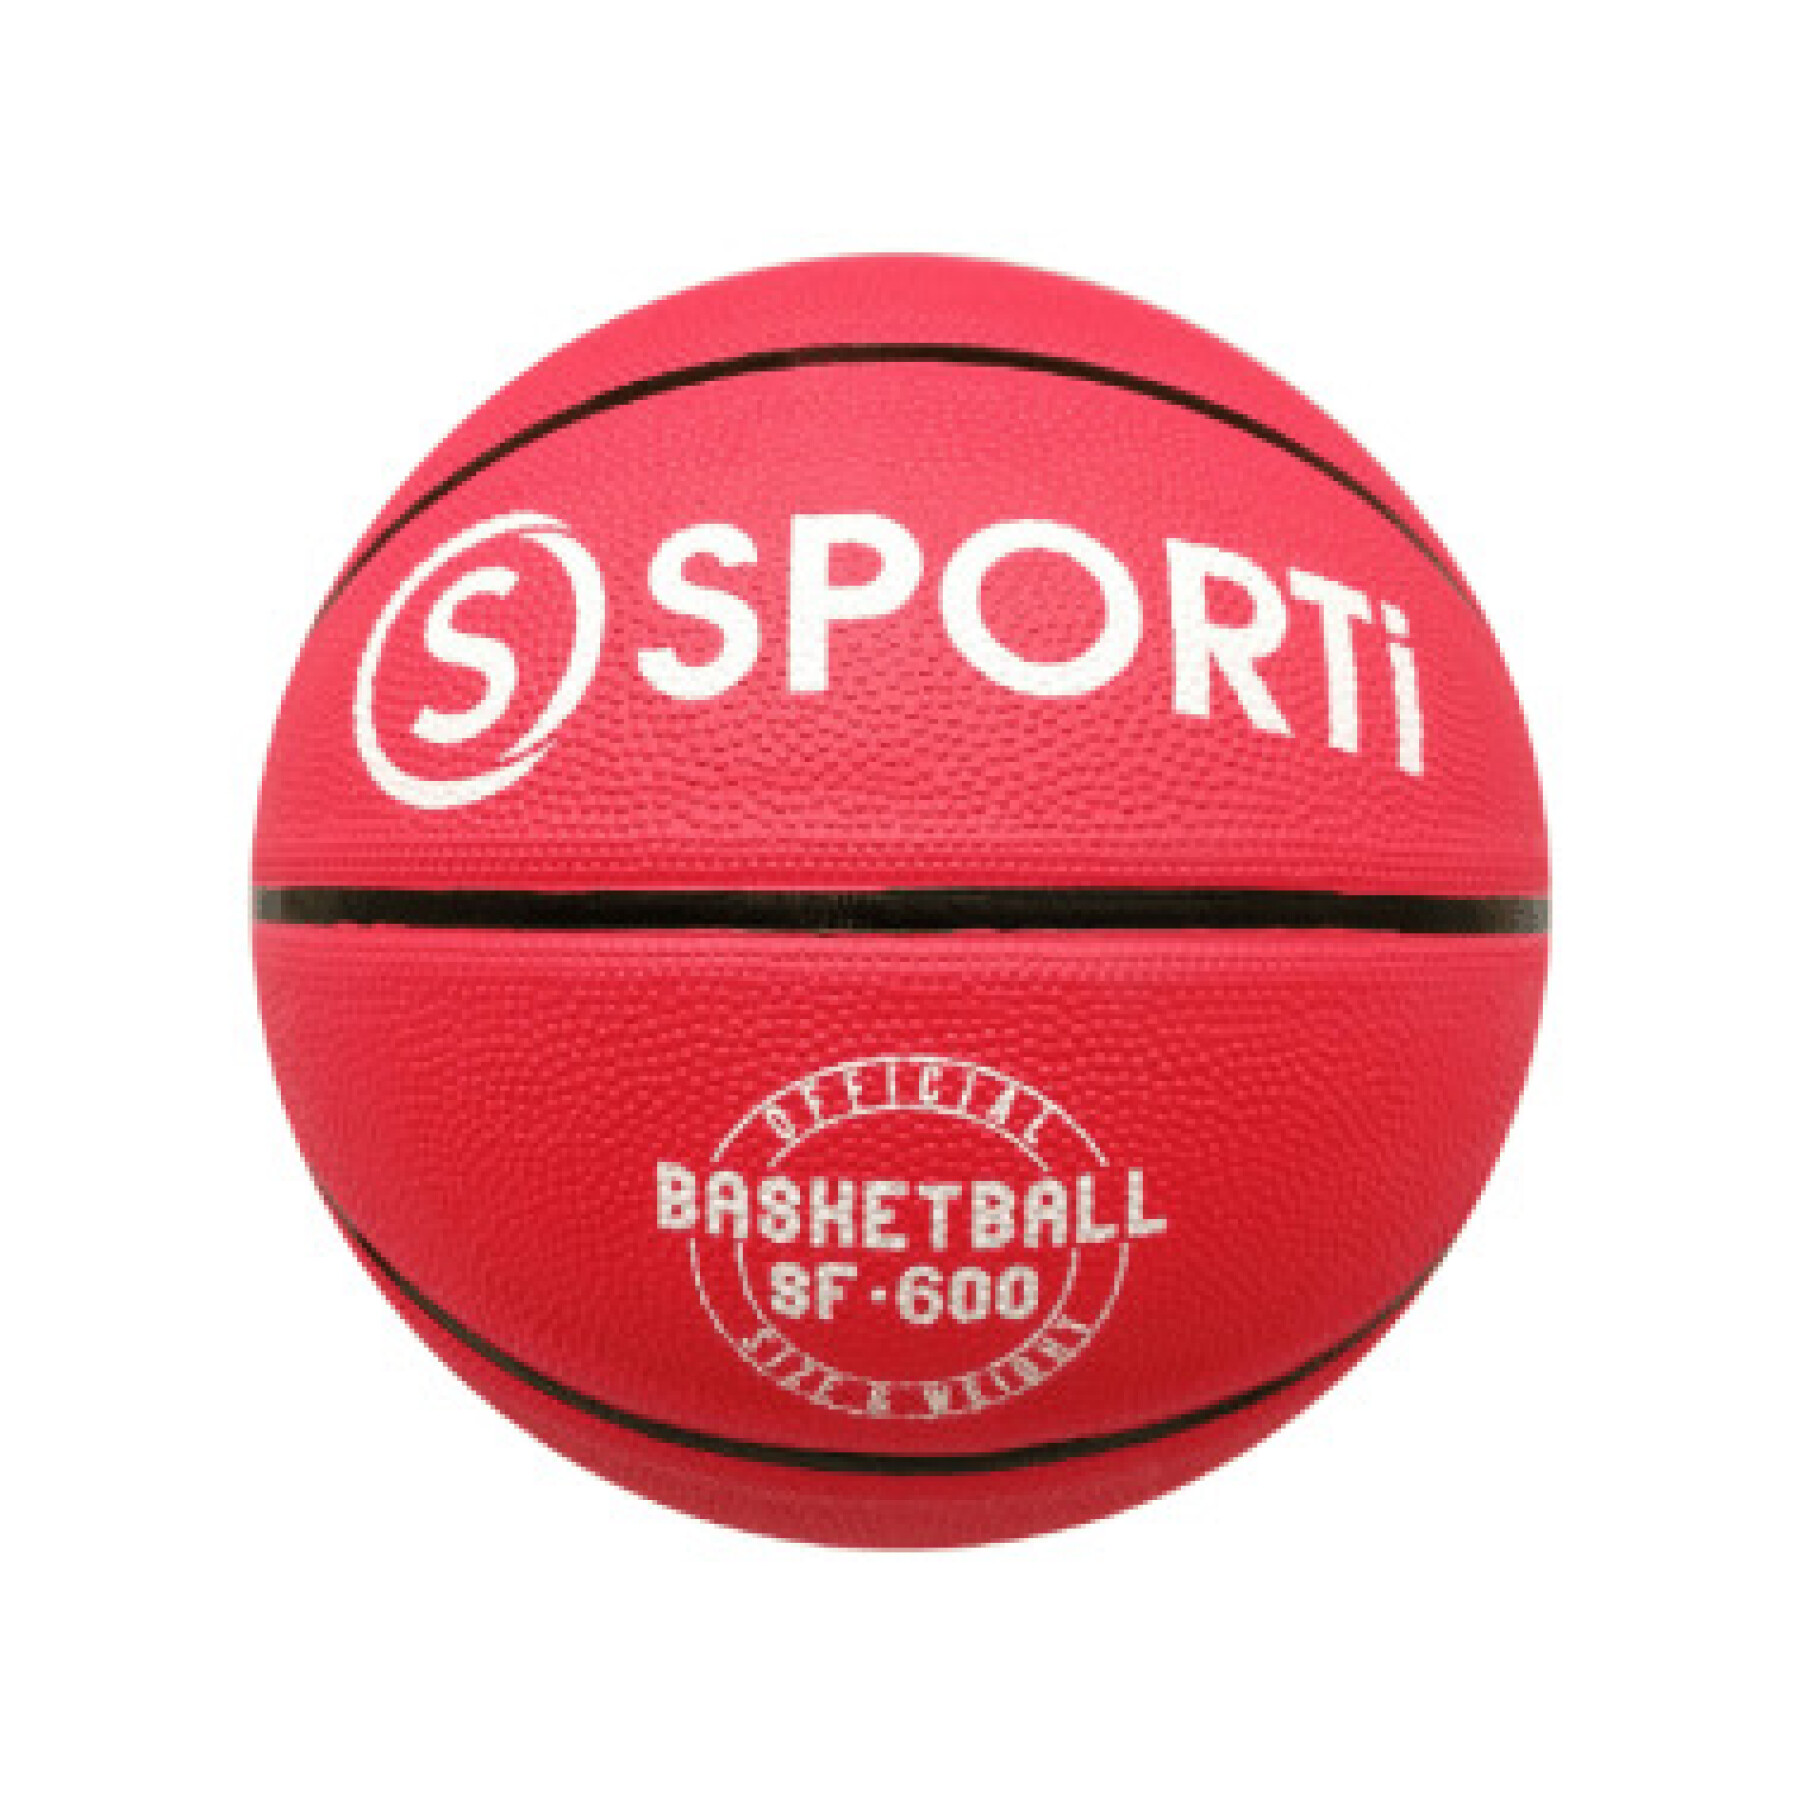 Ballon de basket en caoutchou Sporti